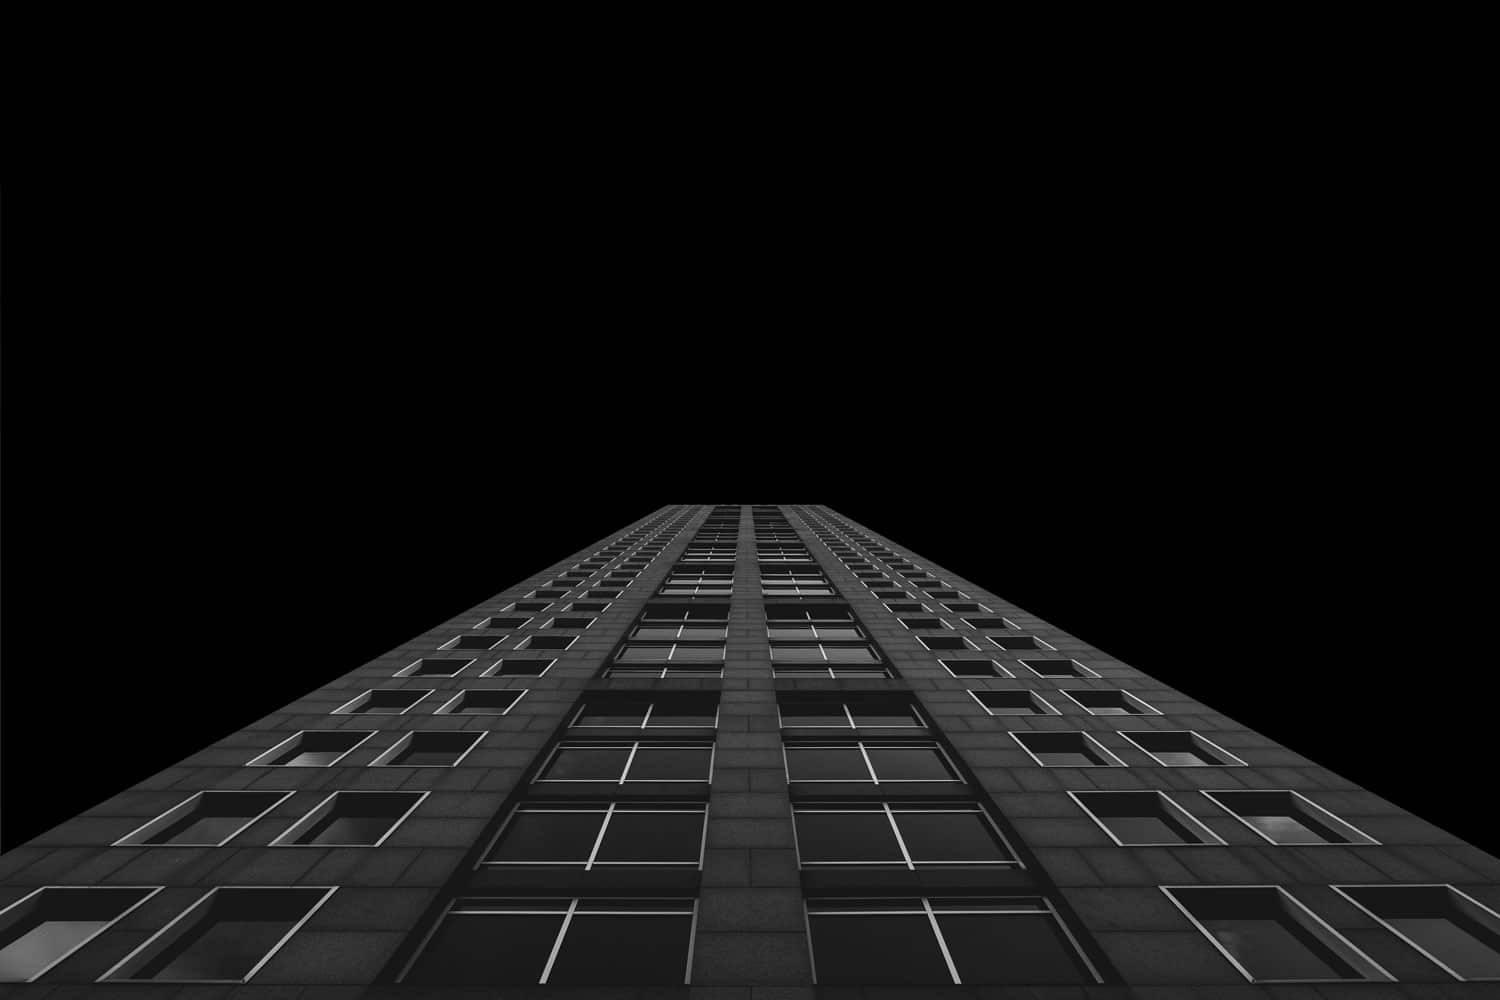 Architecture moderne noire d'un immeuble à multiples étages qui illustre la hauteur, l'ambition et les étapes à franchir.